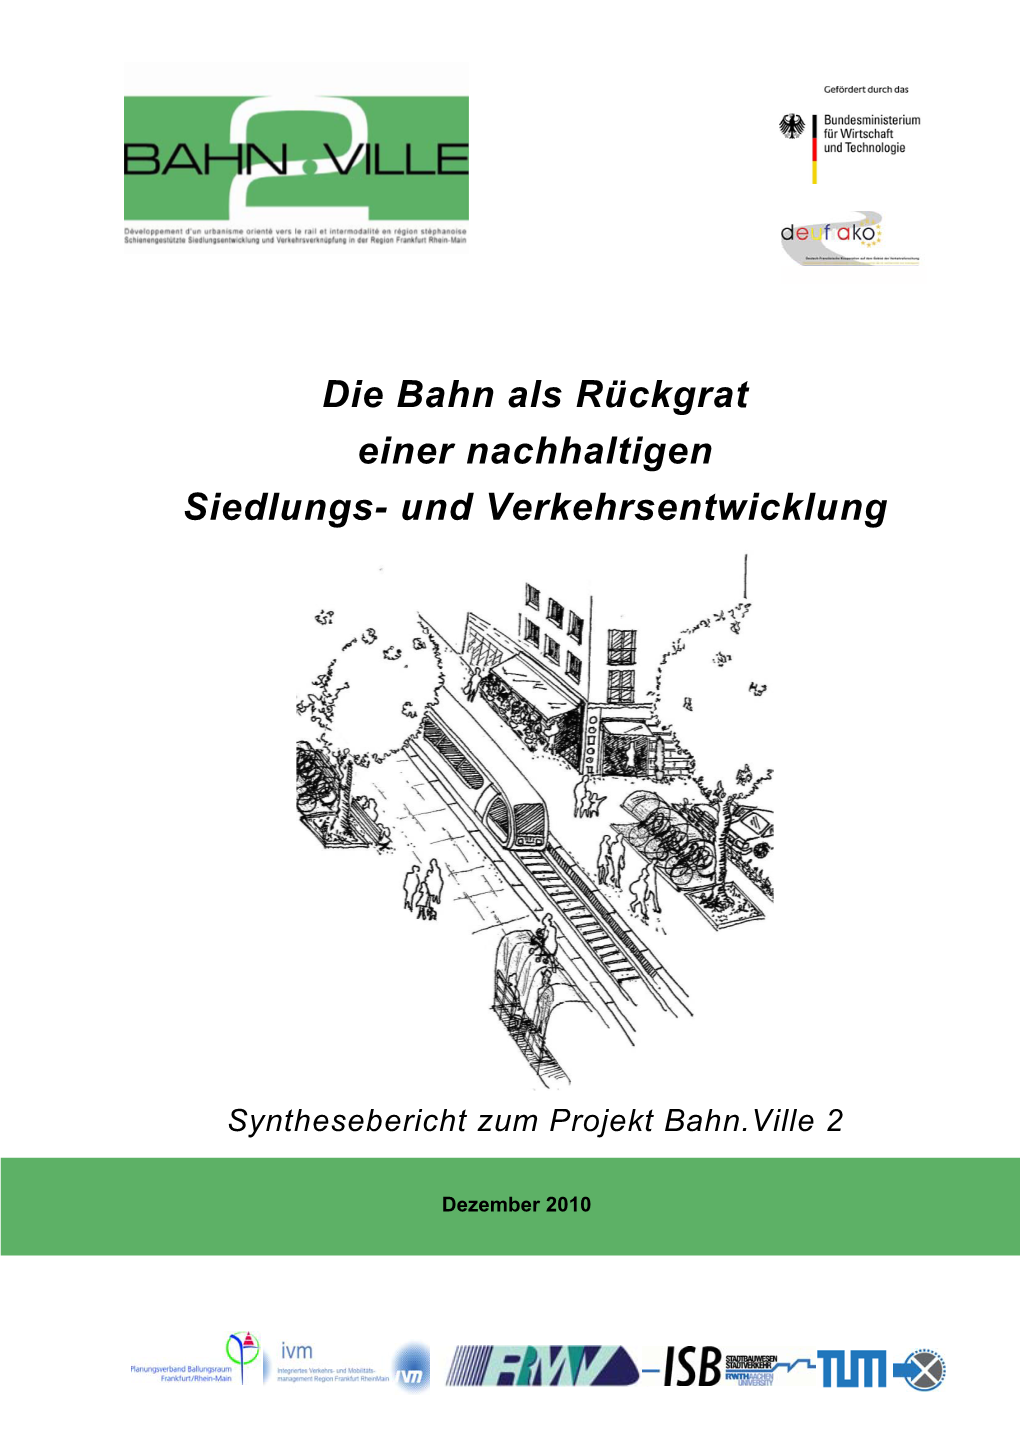 Die Bahn Als Rückgrat Einer Nachhaltigen Siedlungs- Und Verkehrsentwicklung